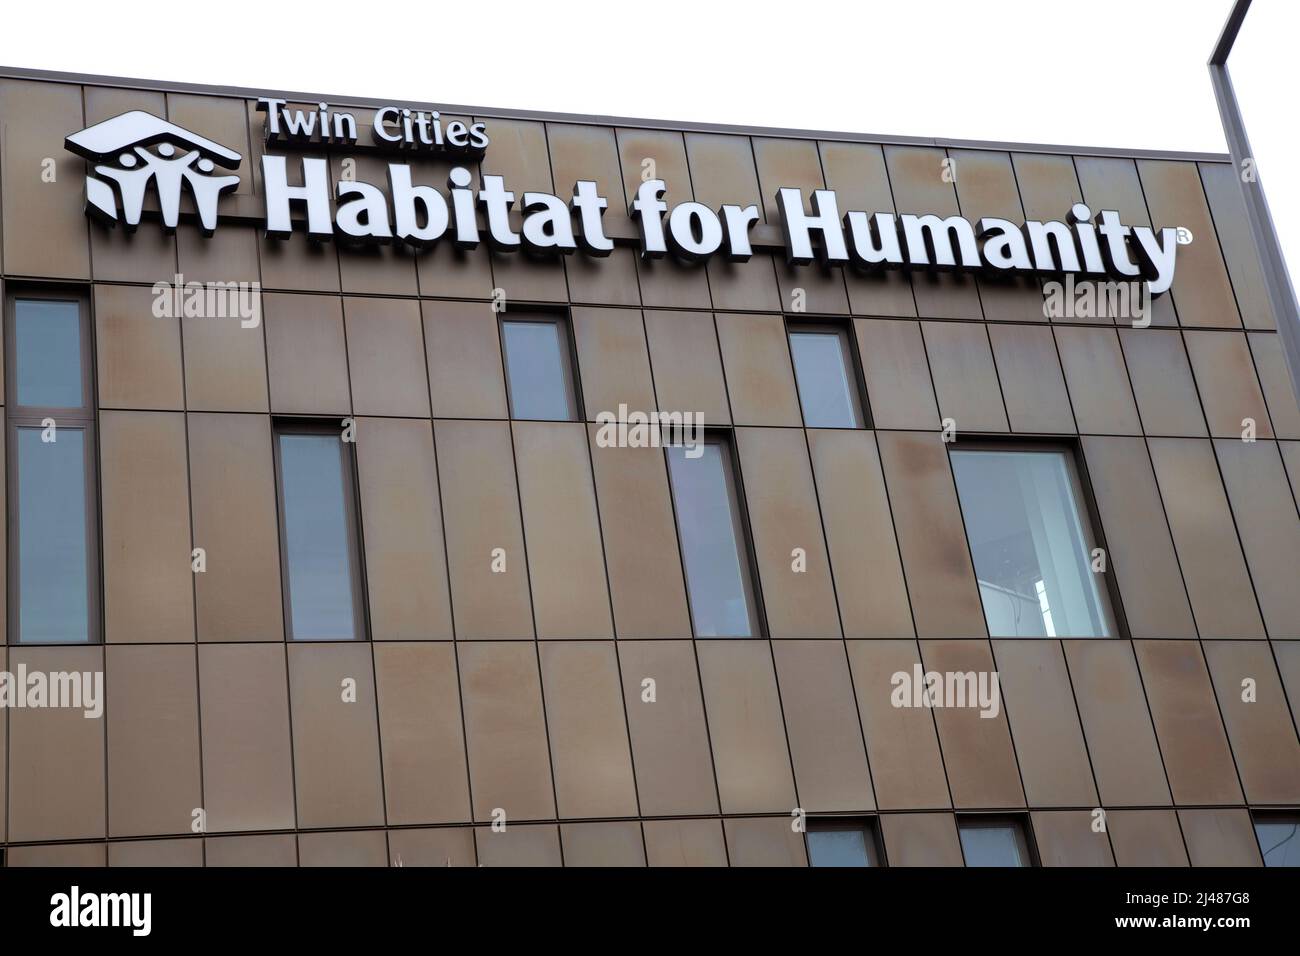 Twin Cities Habitat for Humanity, edificio de oficinas que ofrece viviendas asequibles. St Paul Minnesota MN EE.UU Foto de stock